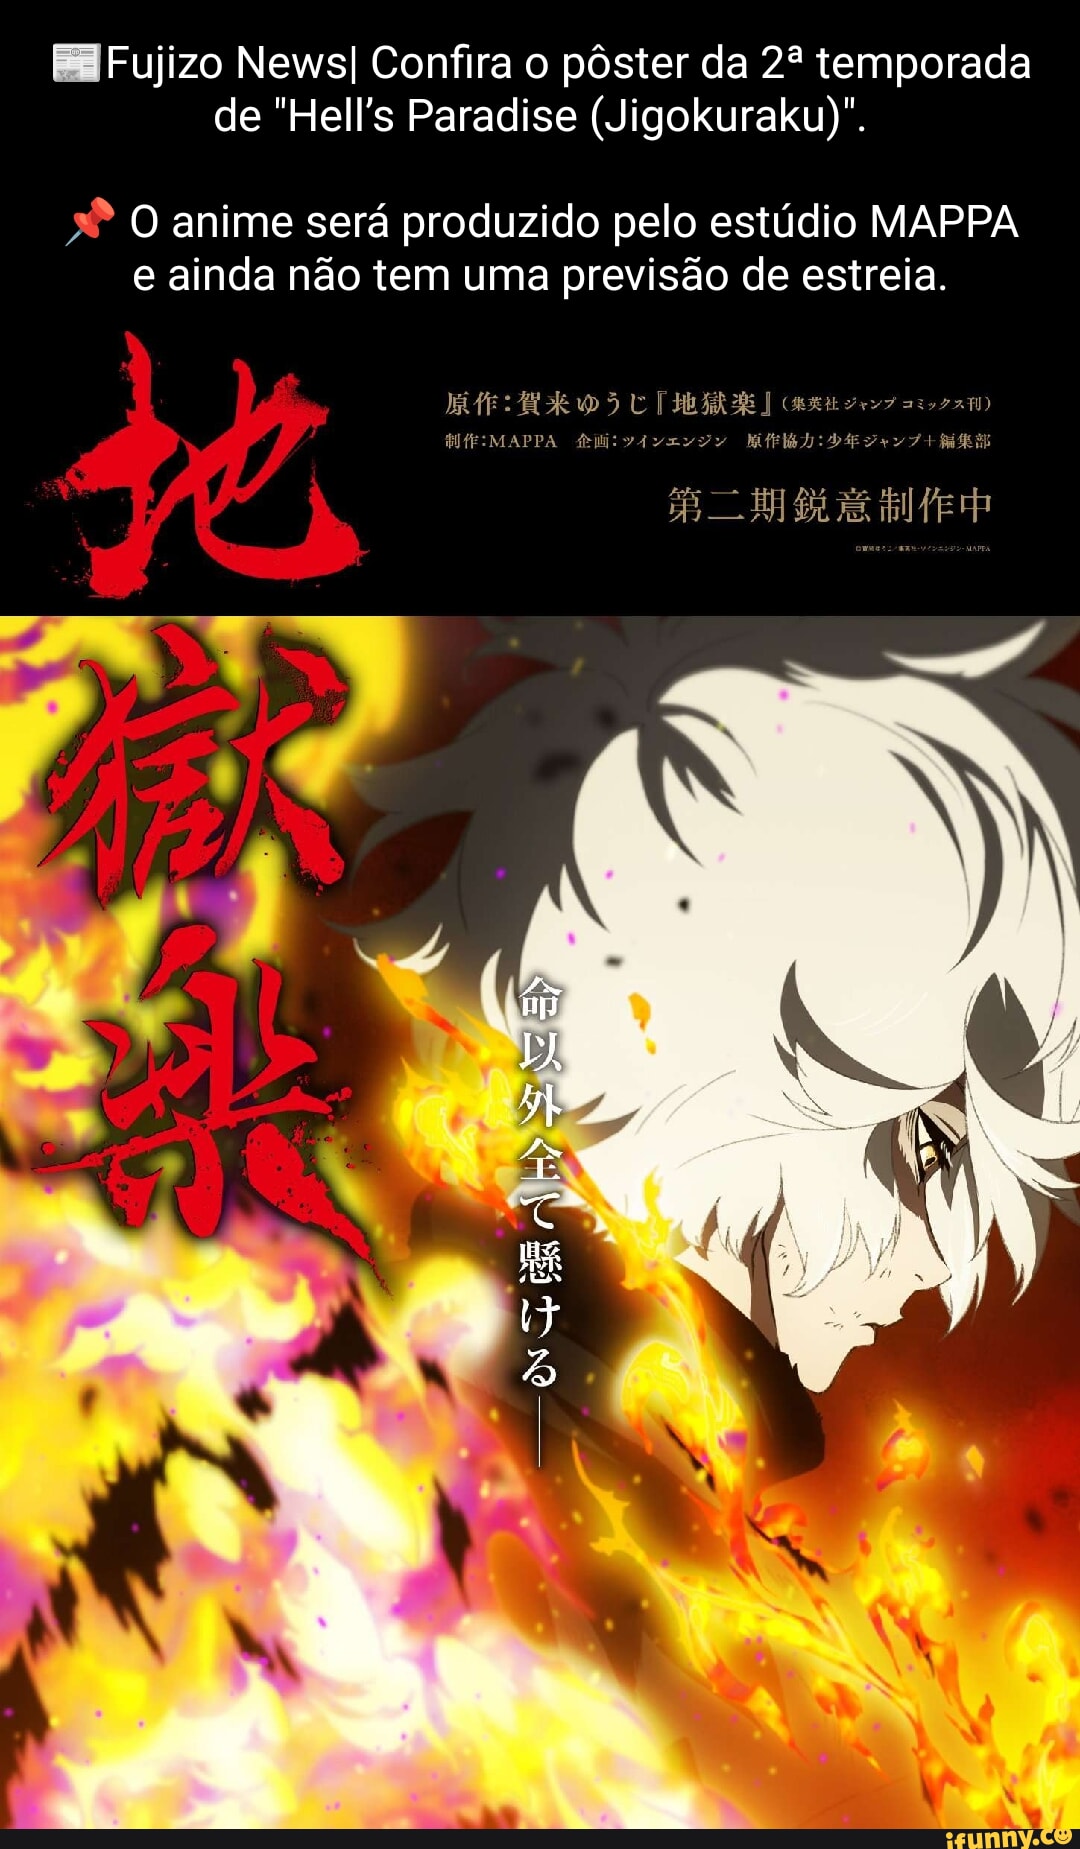 Adaptação em anime de Hell's Paradise: Jigokuraku ganha primeiro vídeo  promocional pelo estúdio MAPPA e previsão de estreia - Crunchyroll Notícias